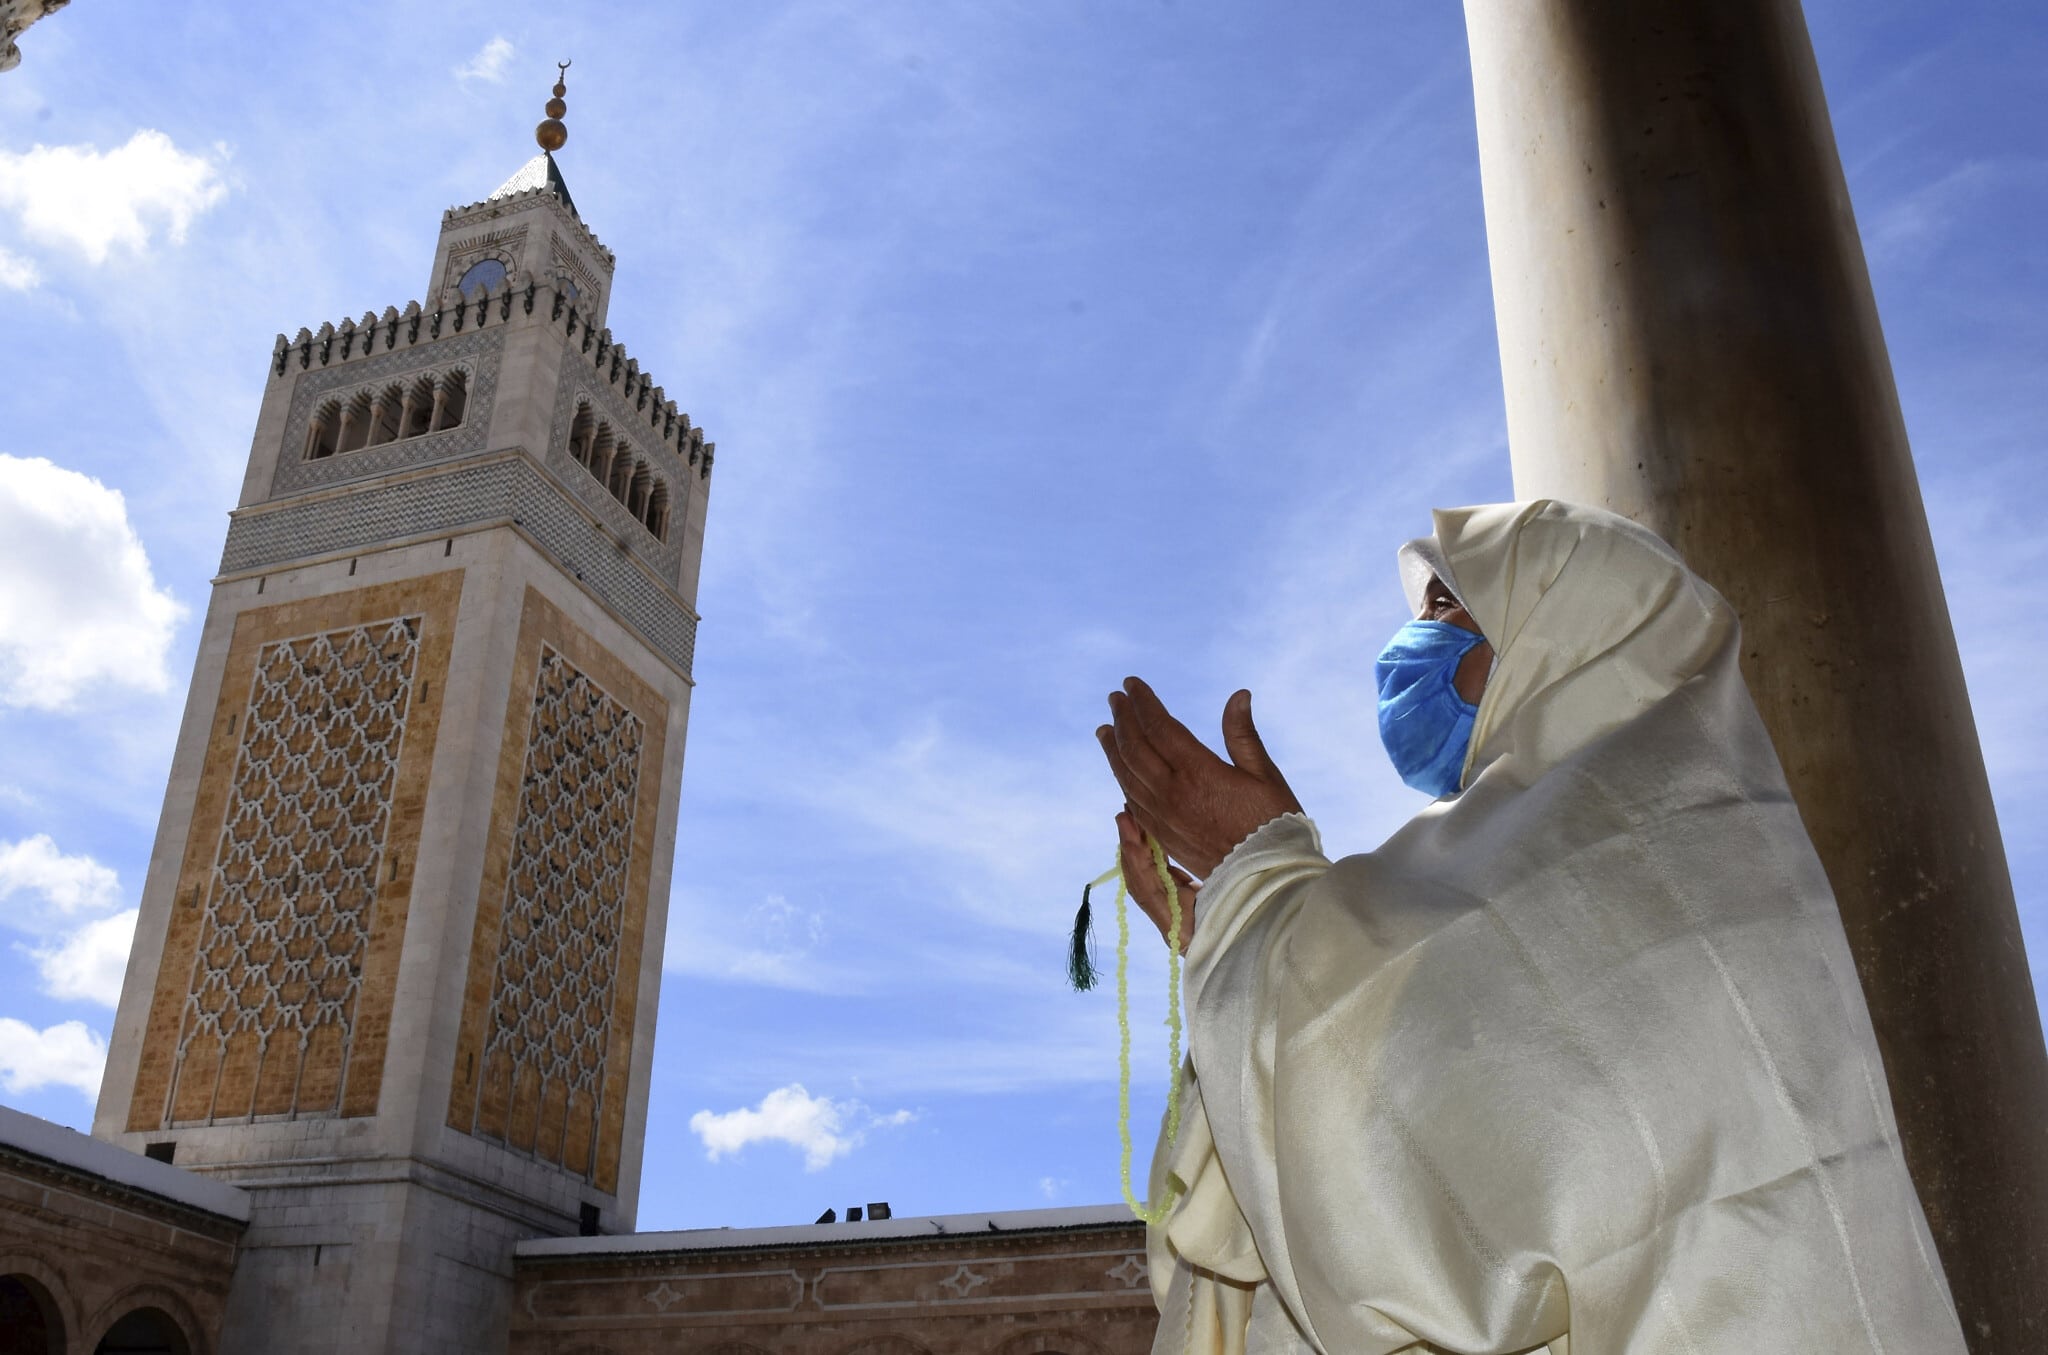 עידן הקורונה בתוניסיה: פתיחת המסגדים אחרי שלושה חודשים, יוני 2020 (צילום: AP Photo/Hassene Dridi)